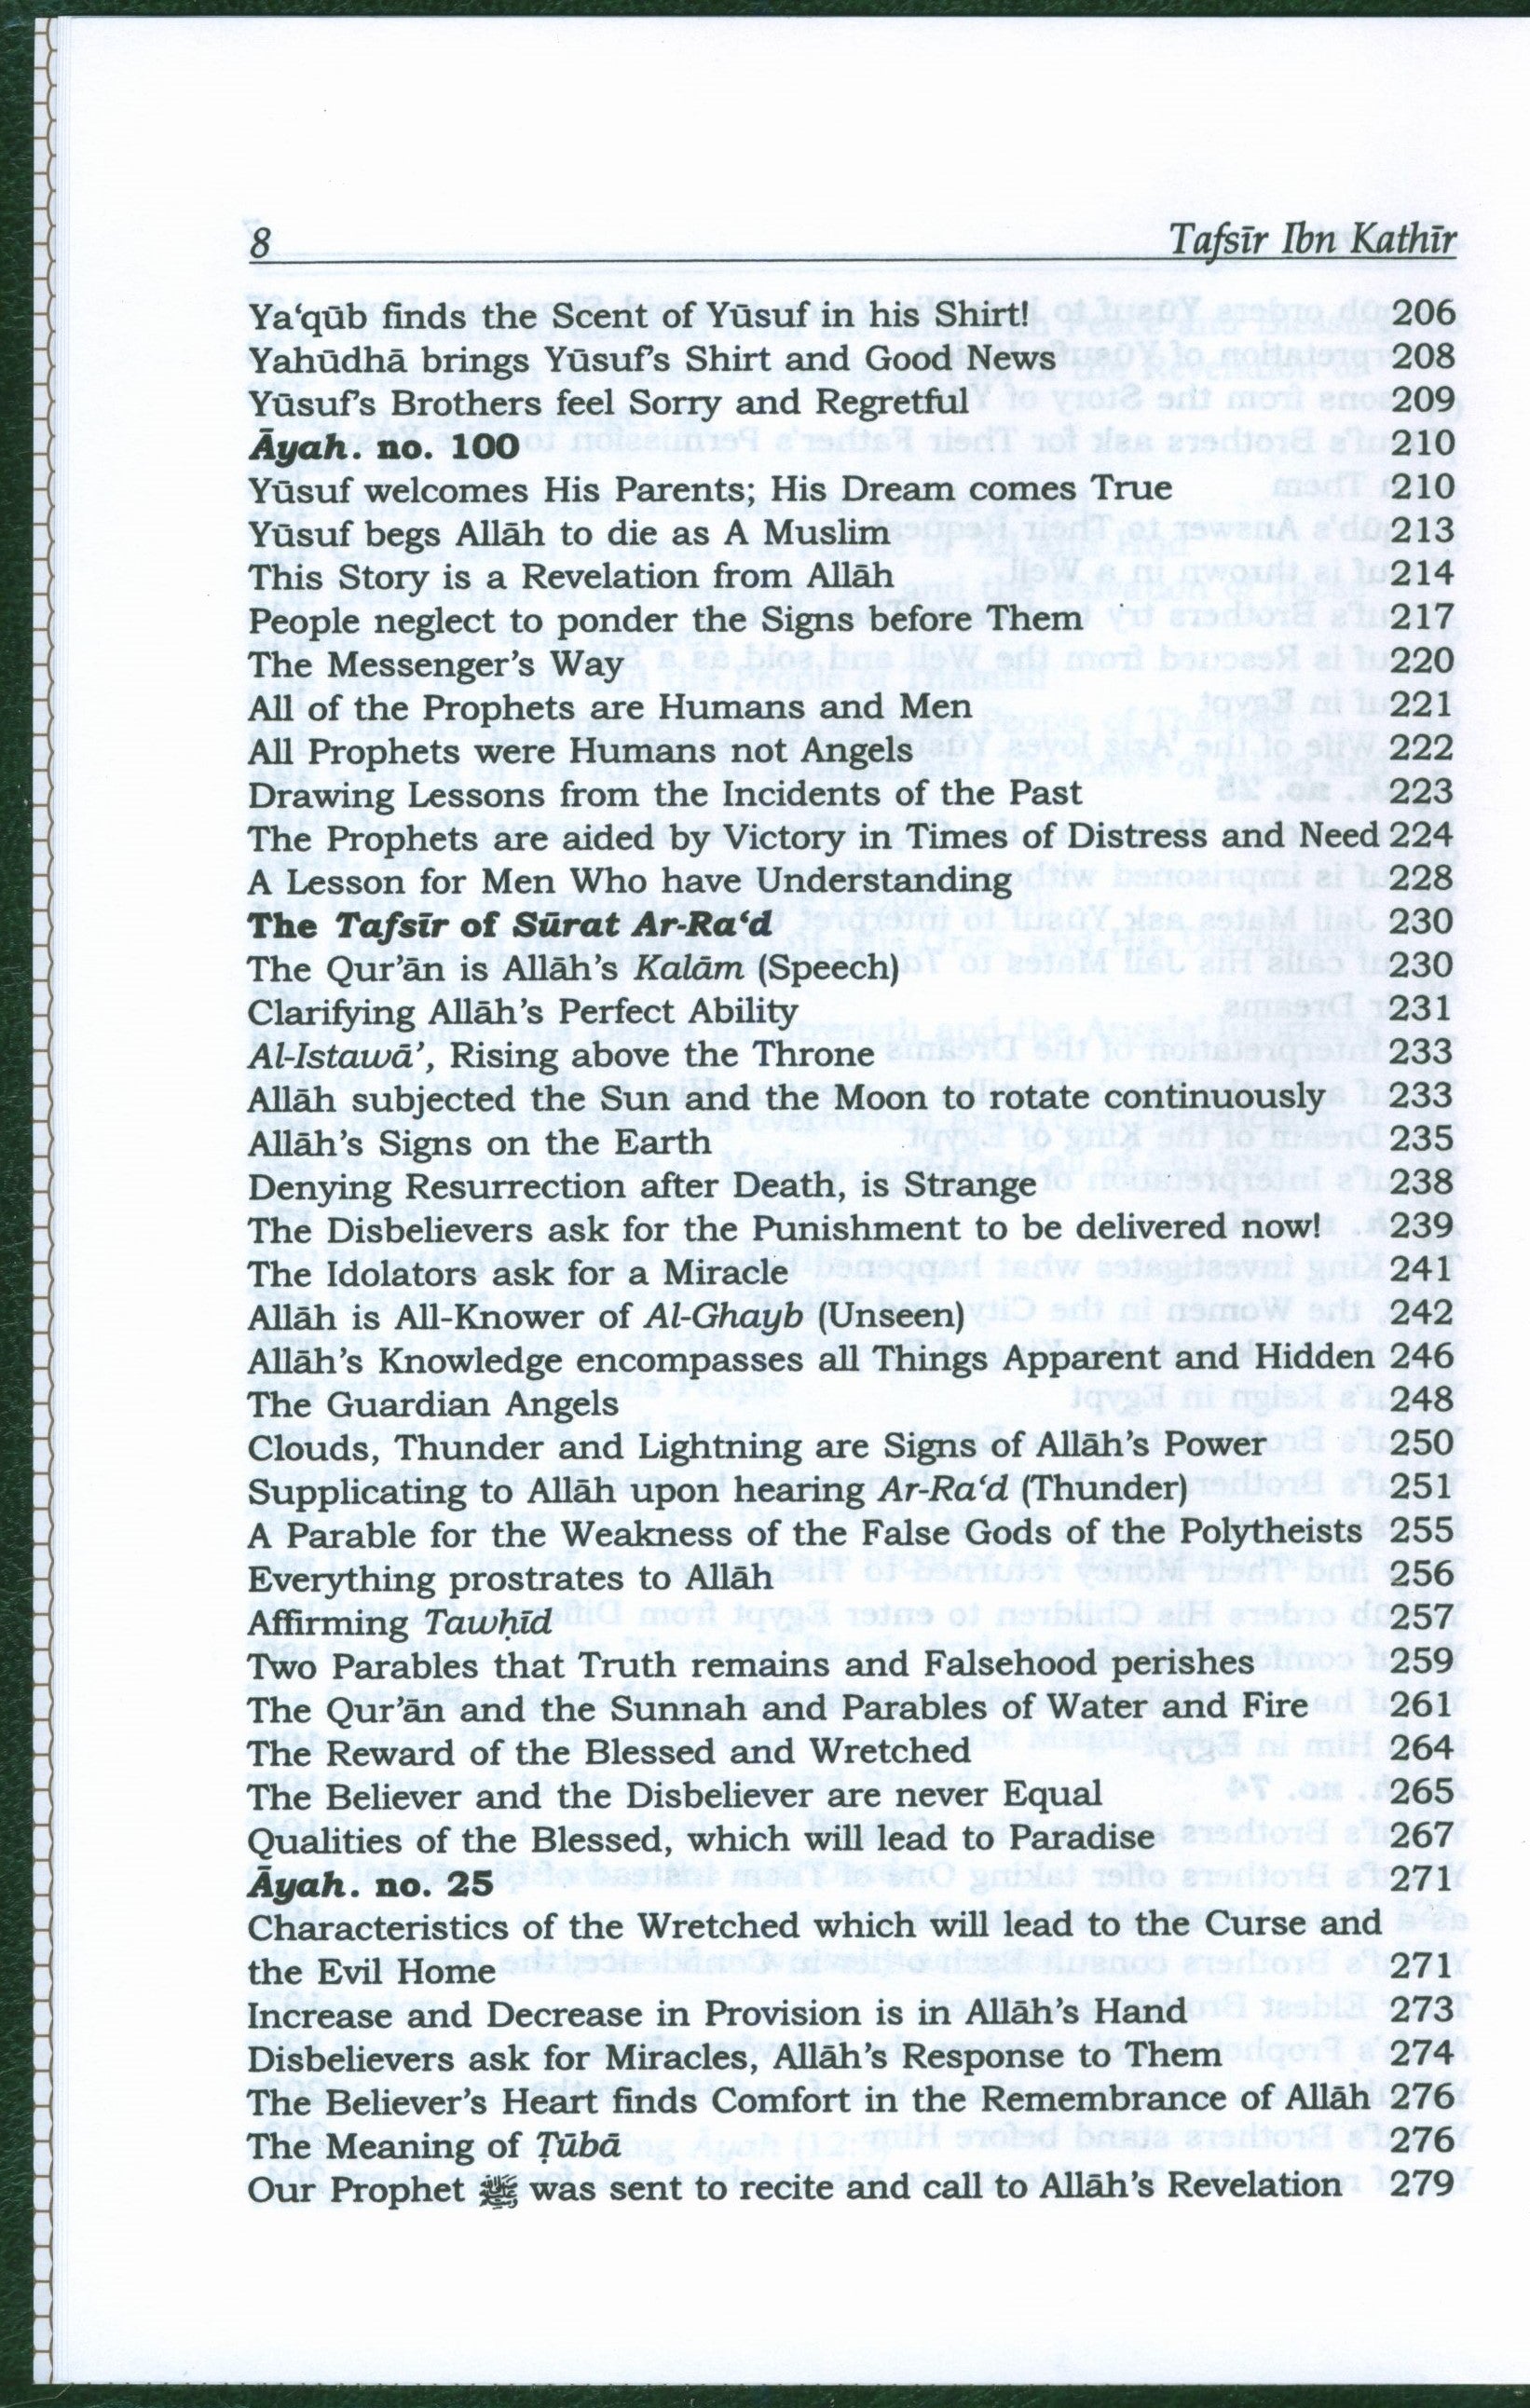 Tafsir Ibn Kathir (10 Volumes Set Abridged)